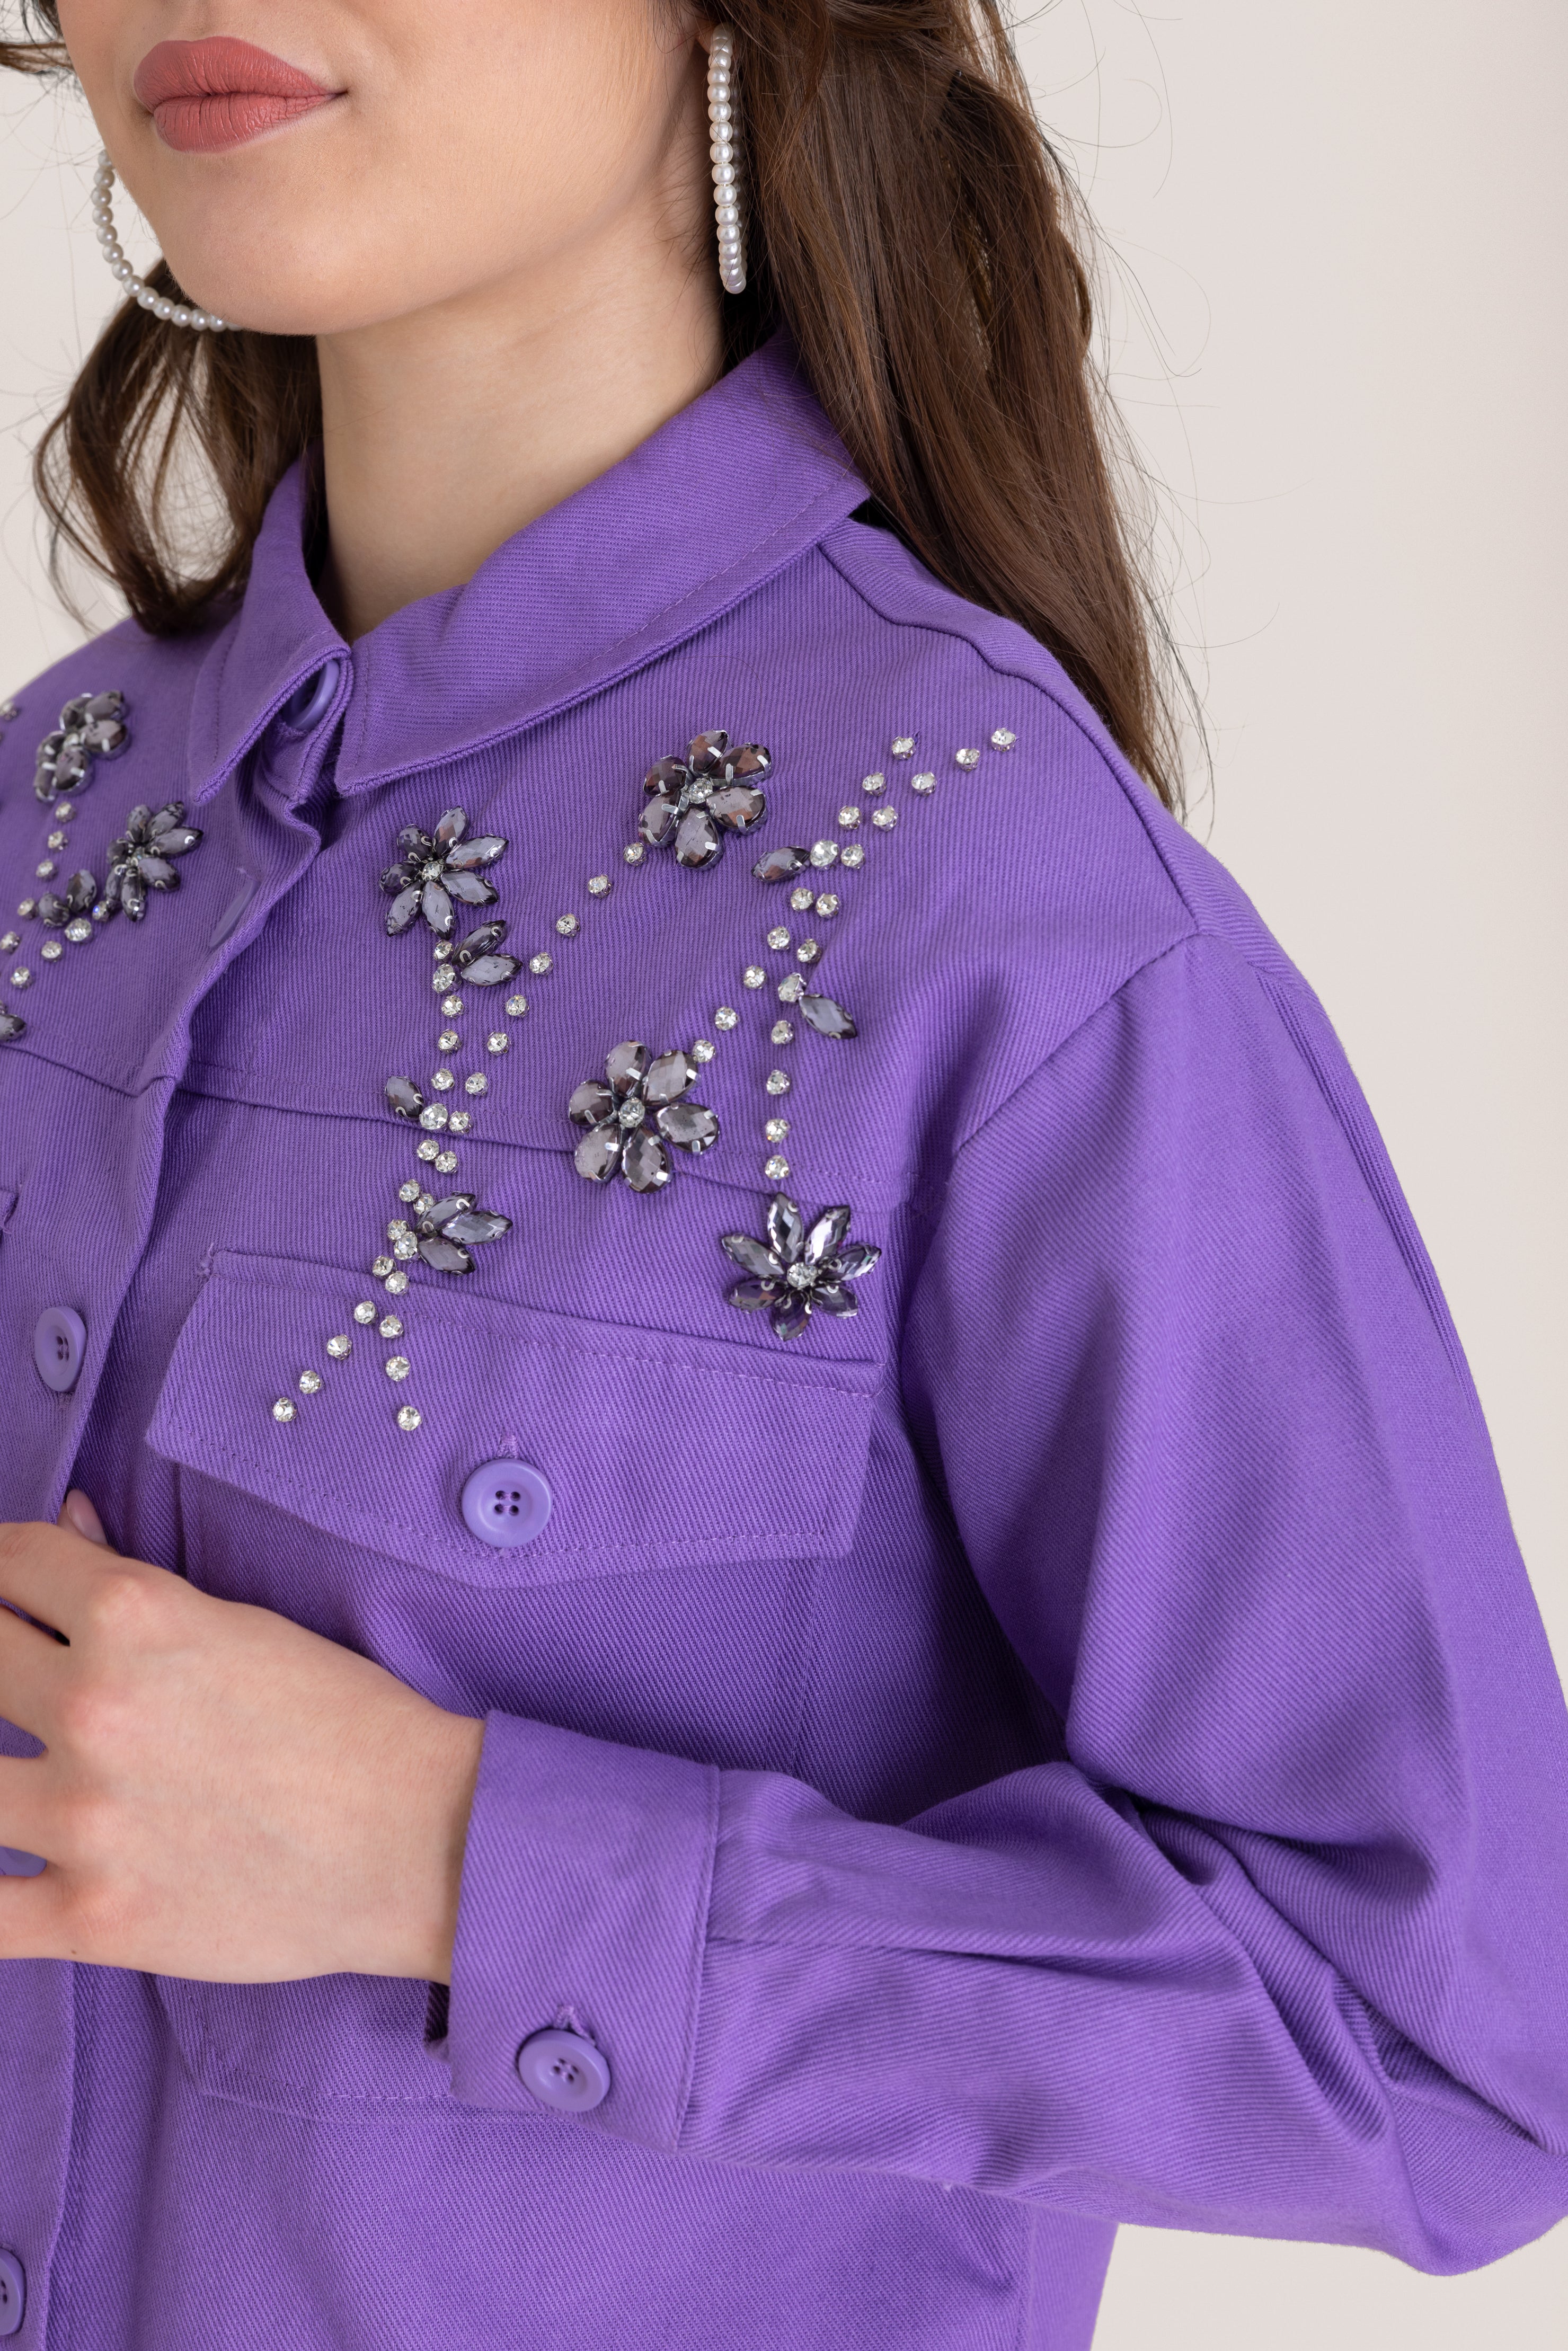 Floral Jewel Patterned Embellished Top - Purple